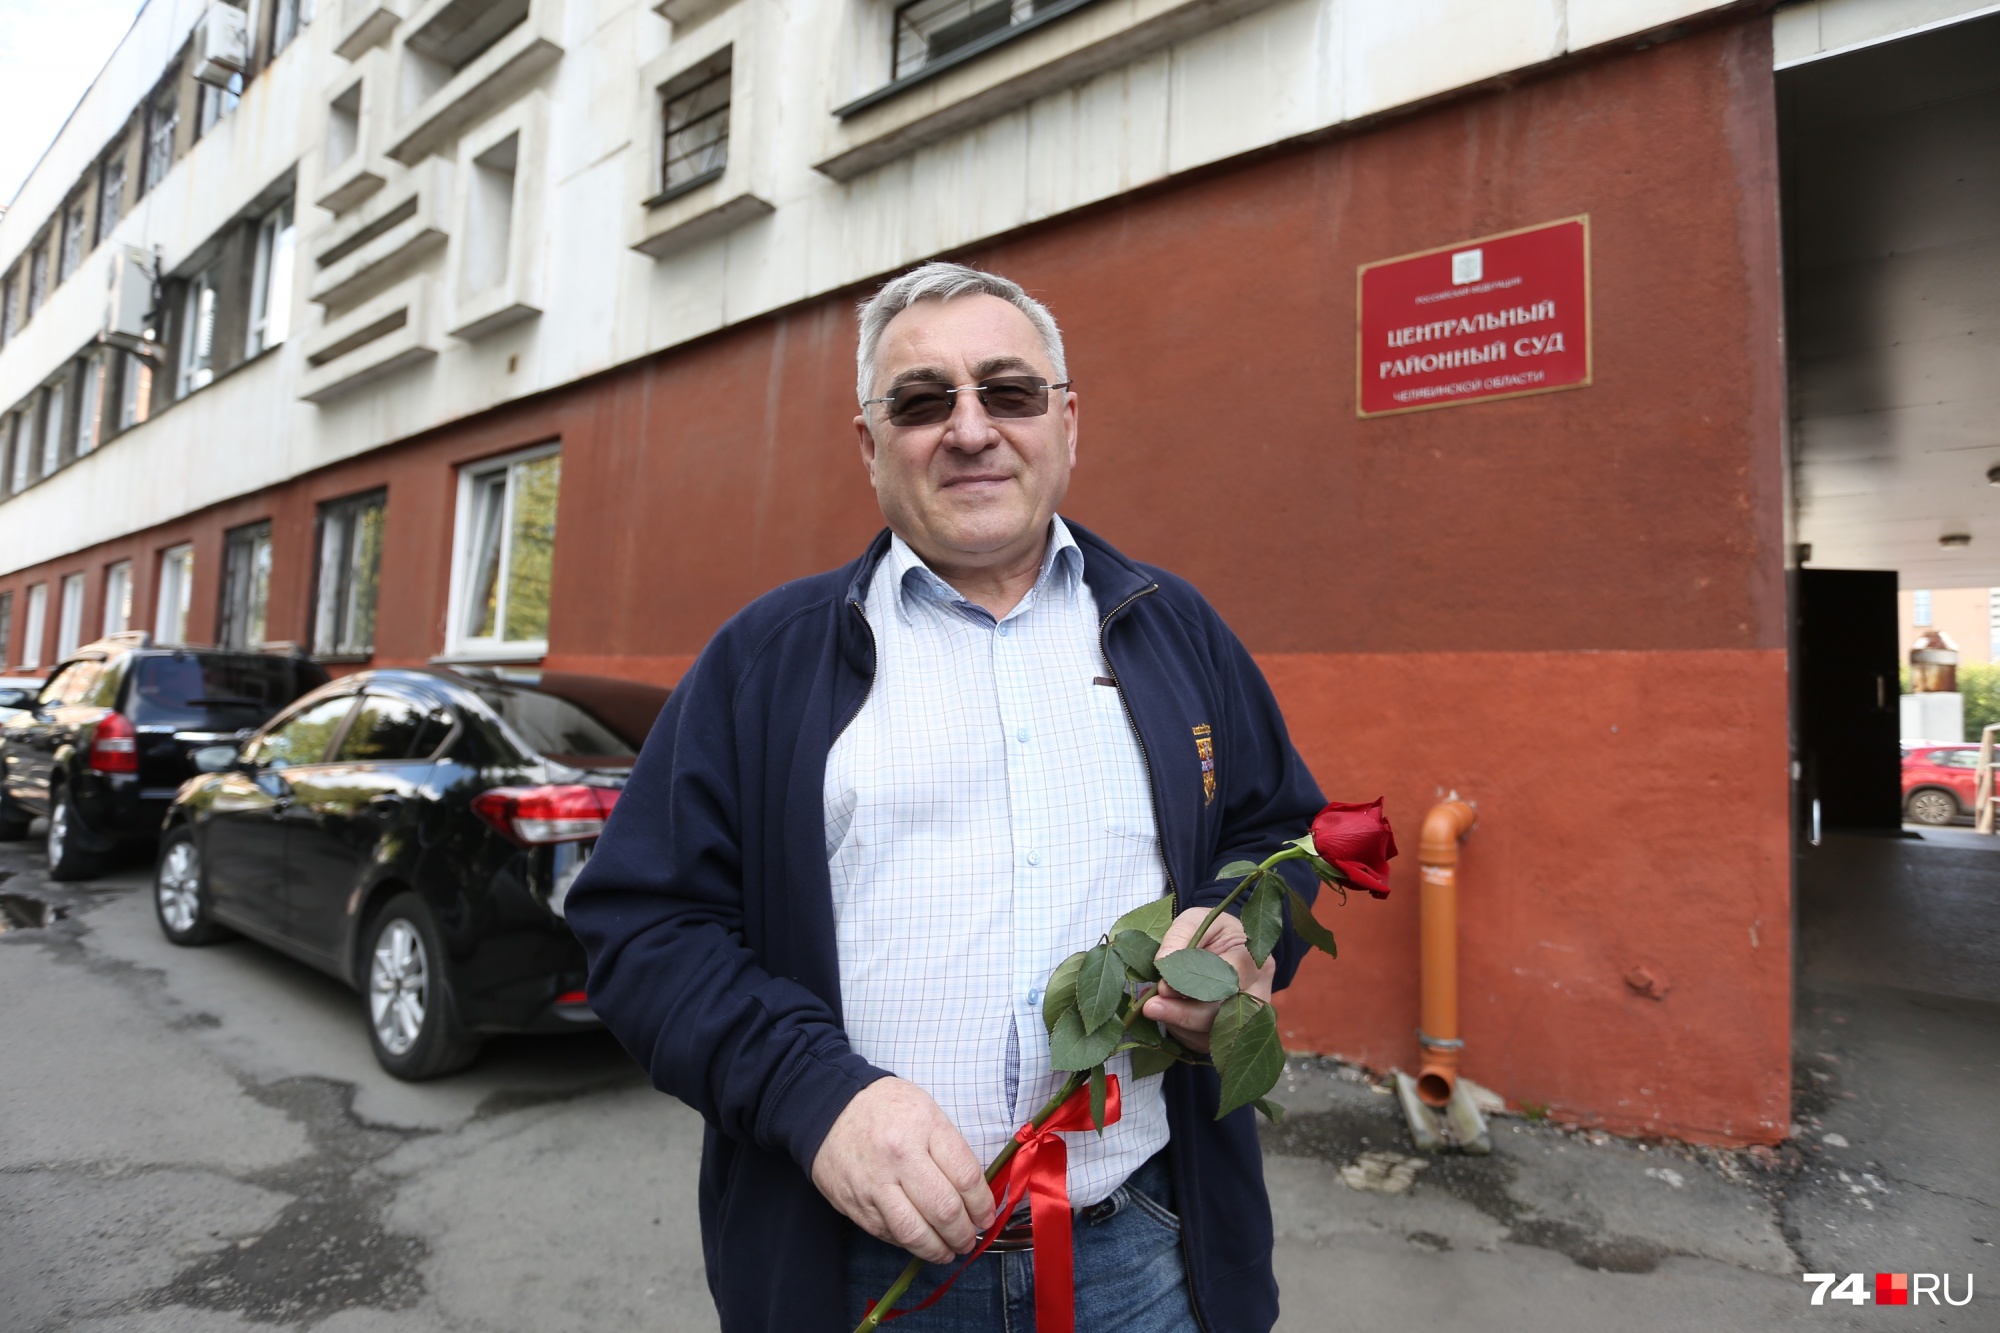 У входа в суд женщина из группы поддержки поблагодарила Маниченко и подарила ему розу